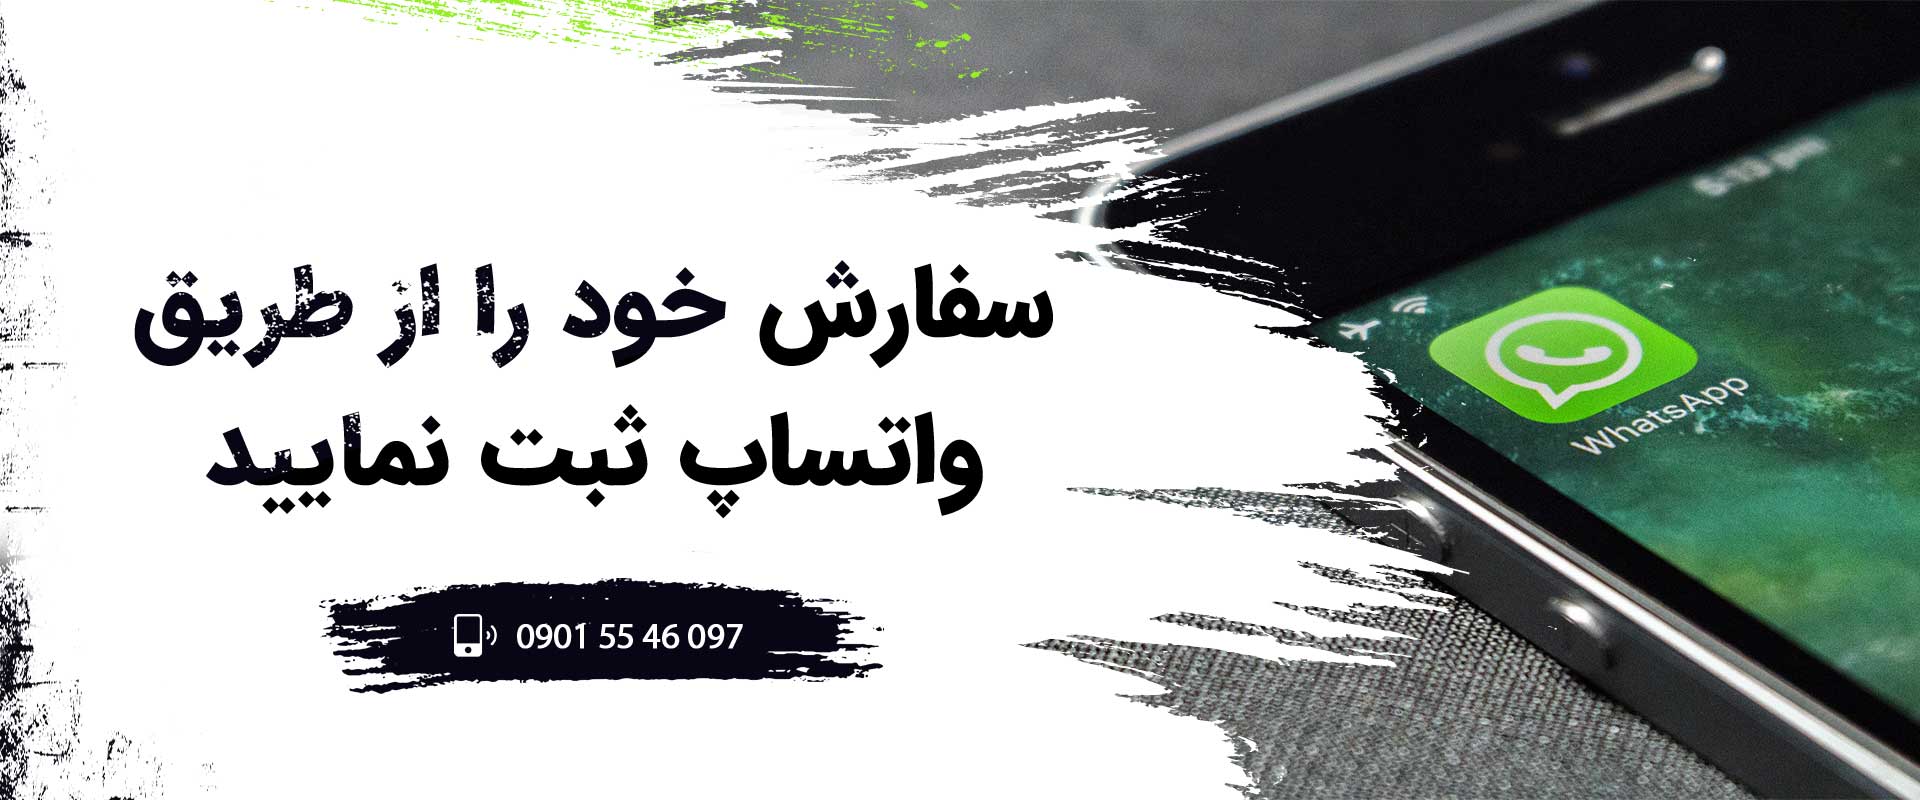 سفارش تلفنی چاپ در اصفهان